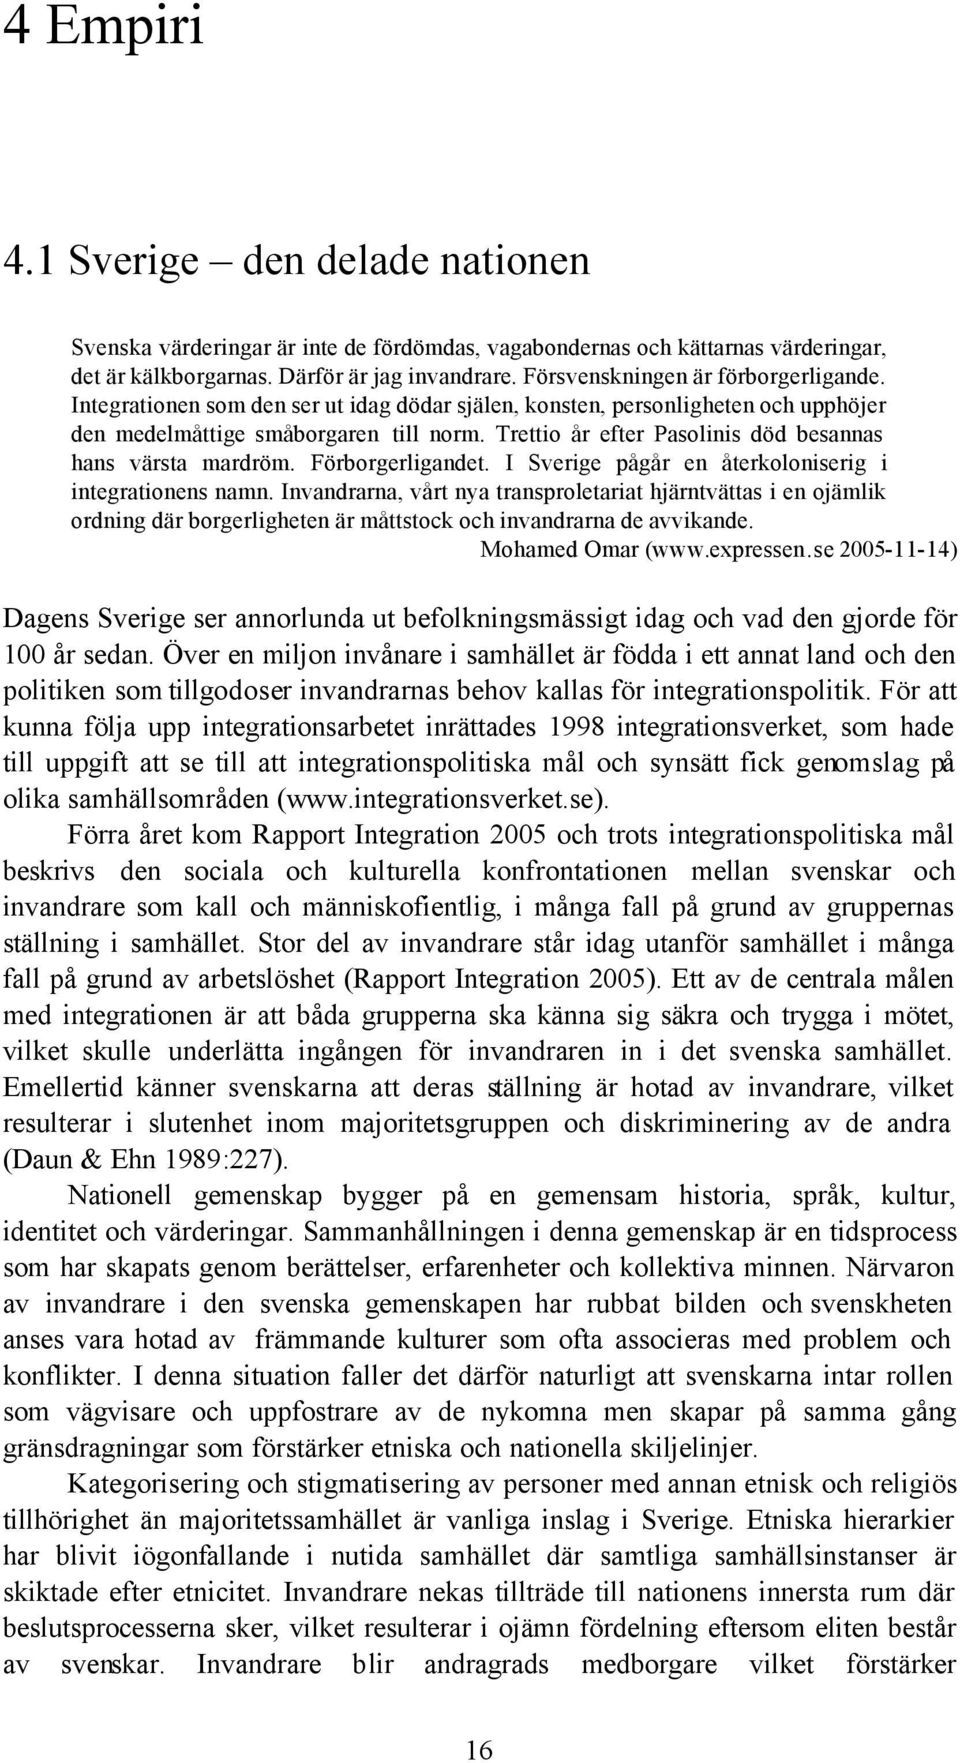 Trettio år efter Pasolinis död besannas hans värsta mardröm. Förborgerligandet. I Sverige pågår en återkoloniserig i integrationens namn.